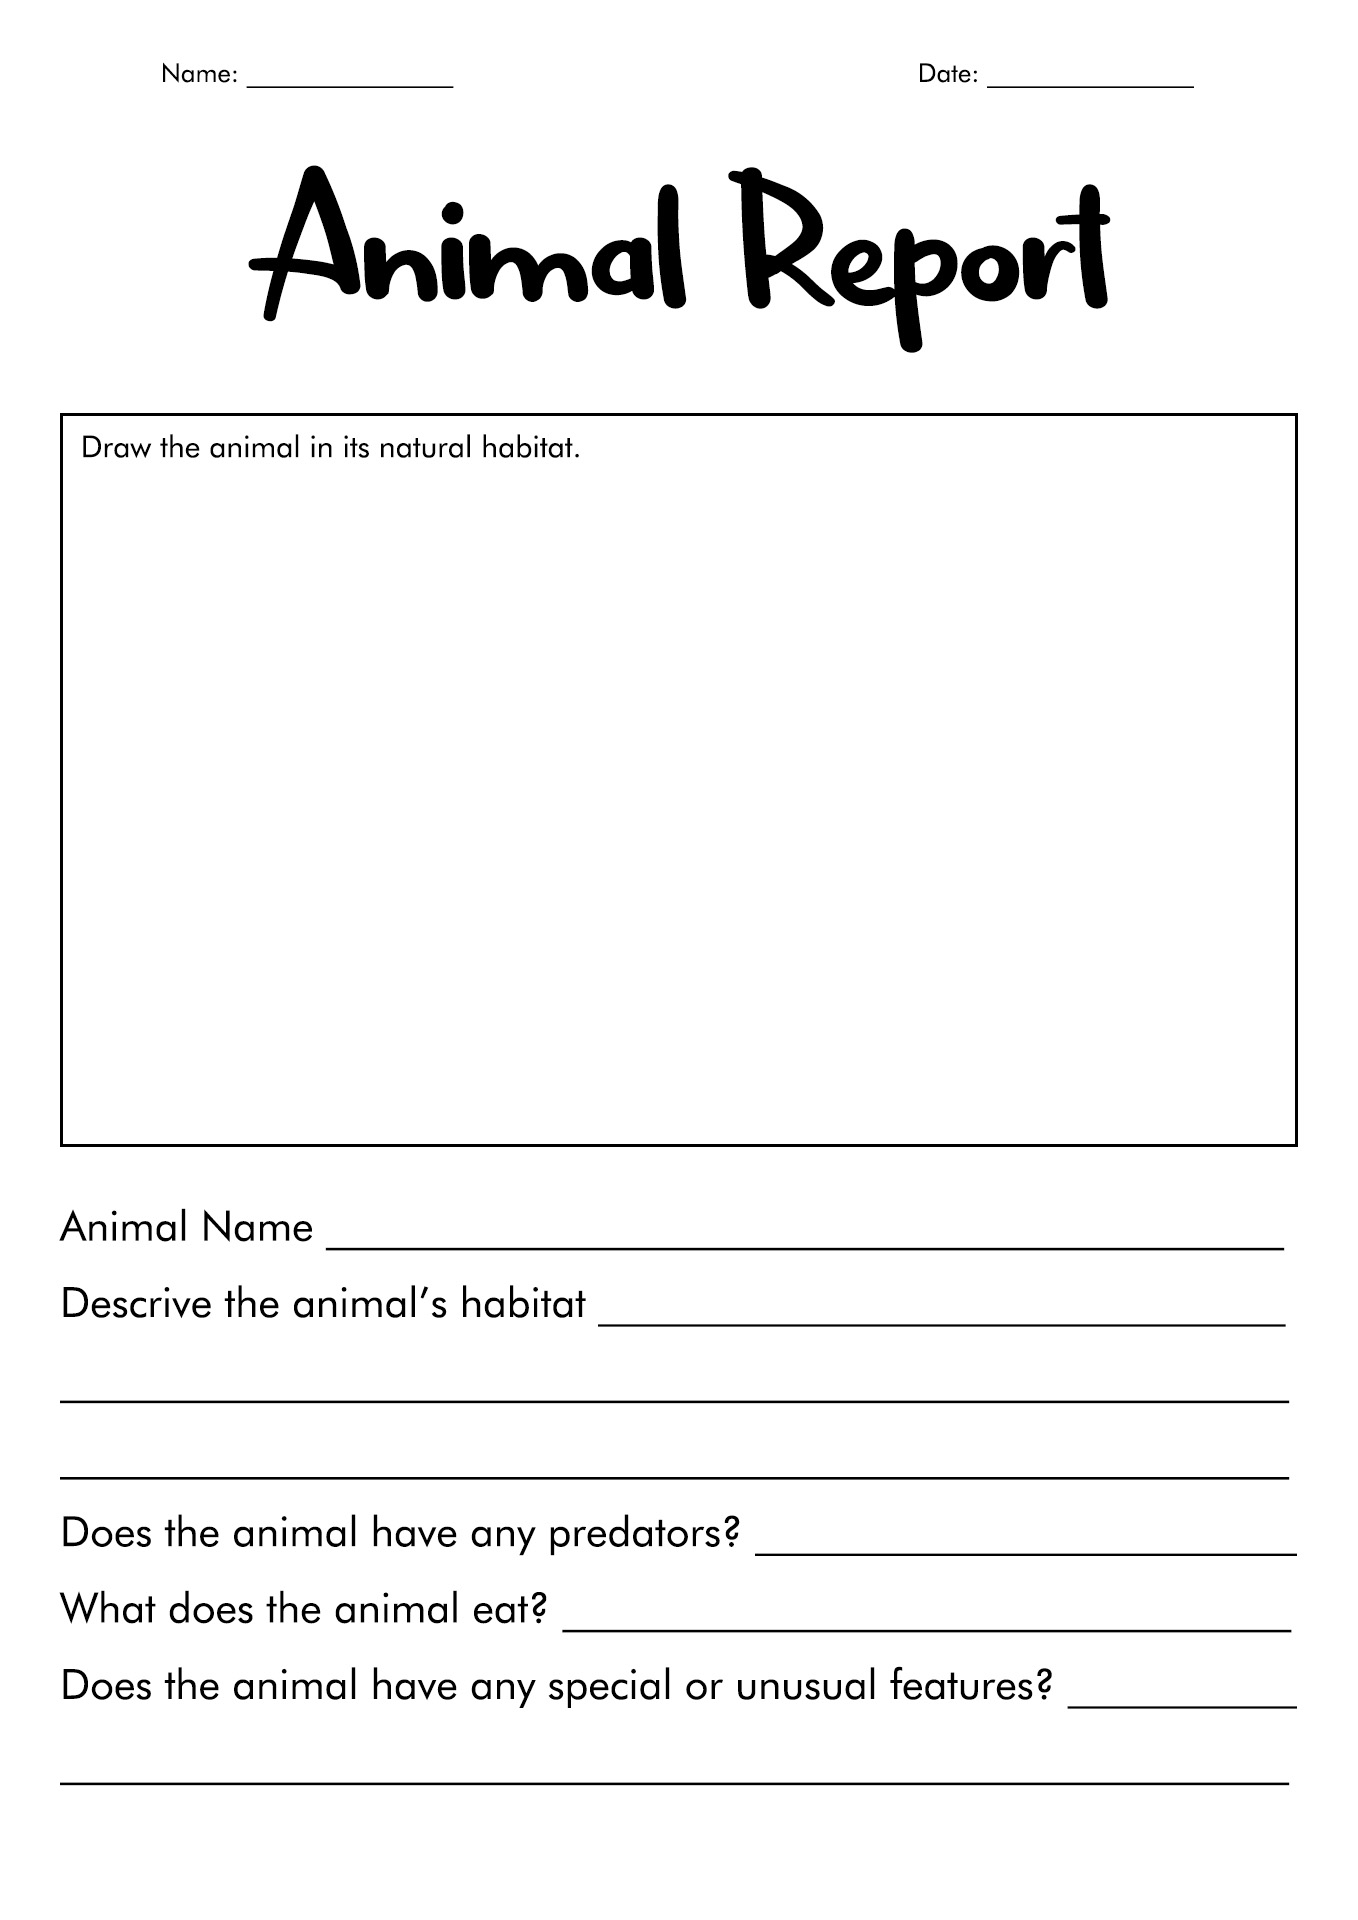 Printable Animal Report Template Image